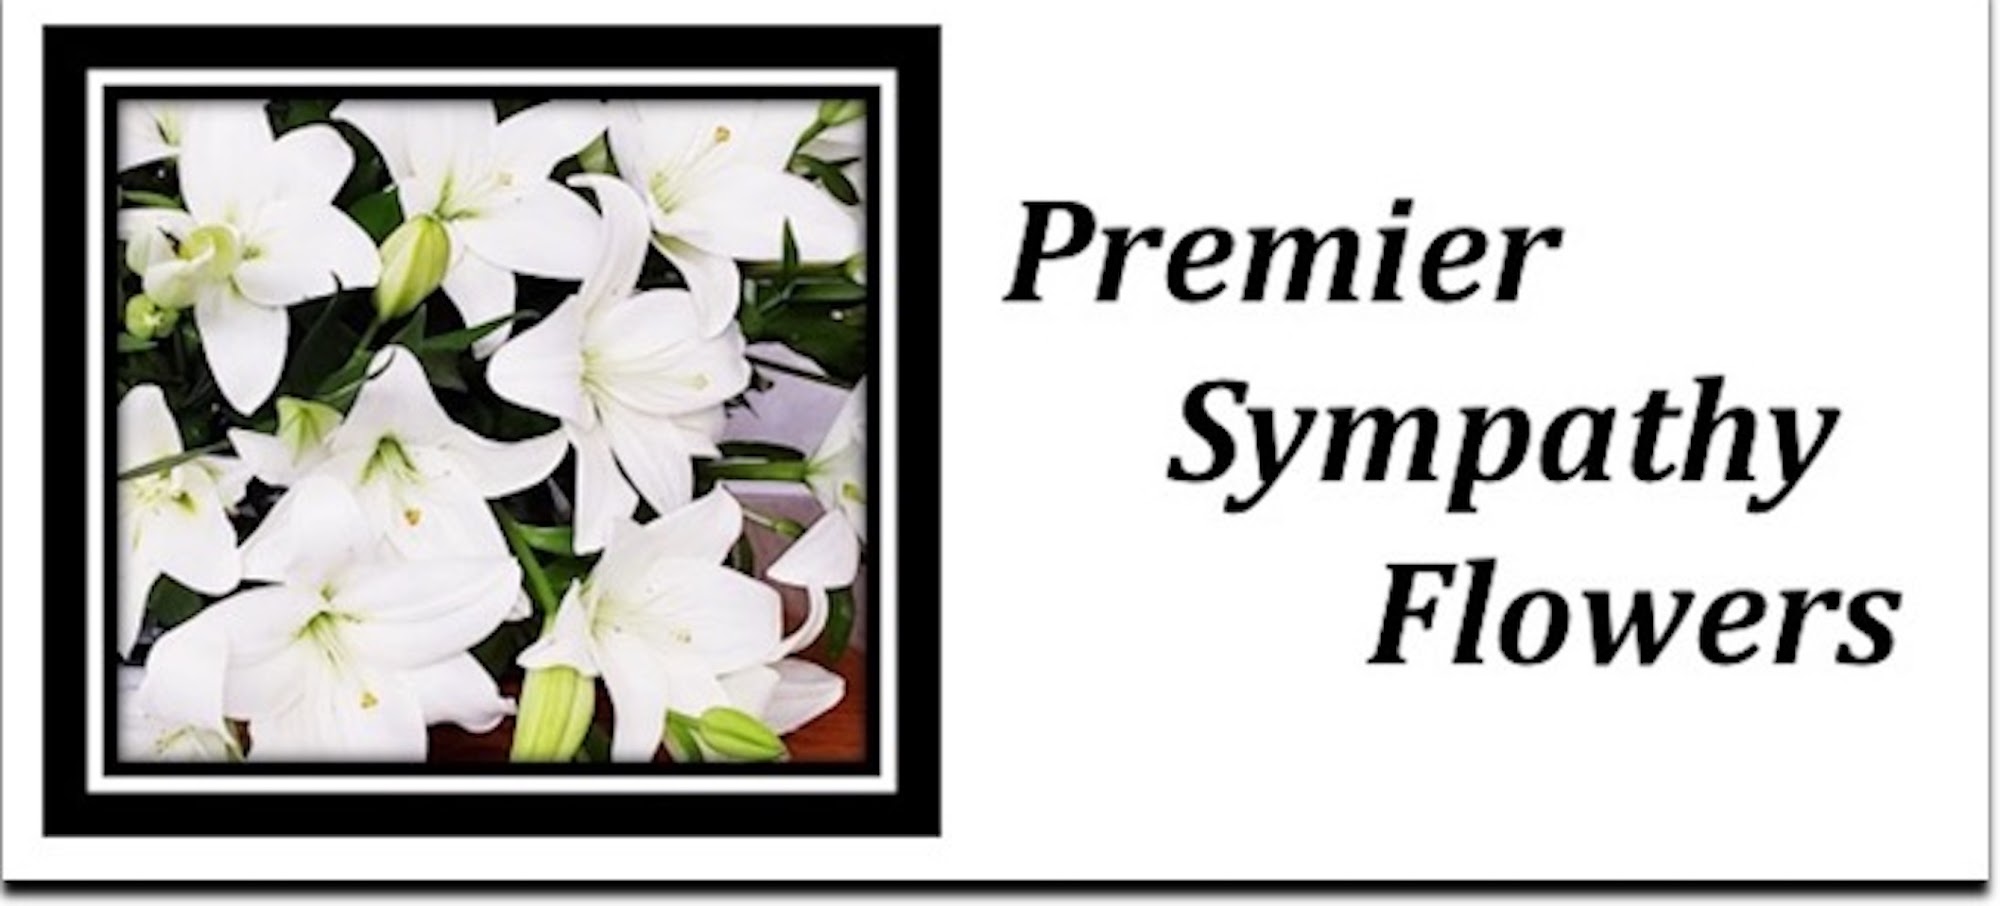 Premier Sympathy Flowers 1257 St Peters Cottleville Rd, Cottleville Missouri 63376